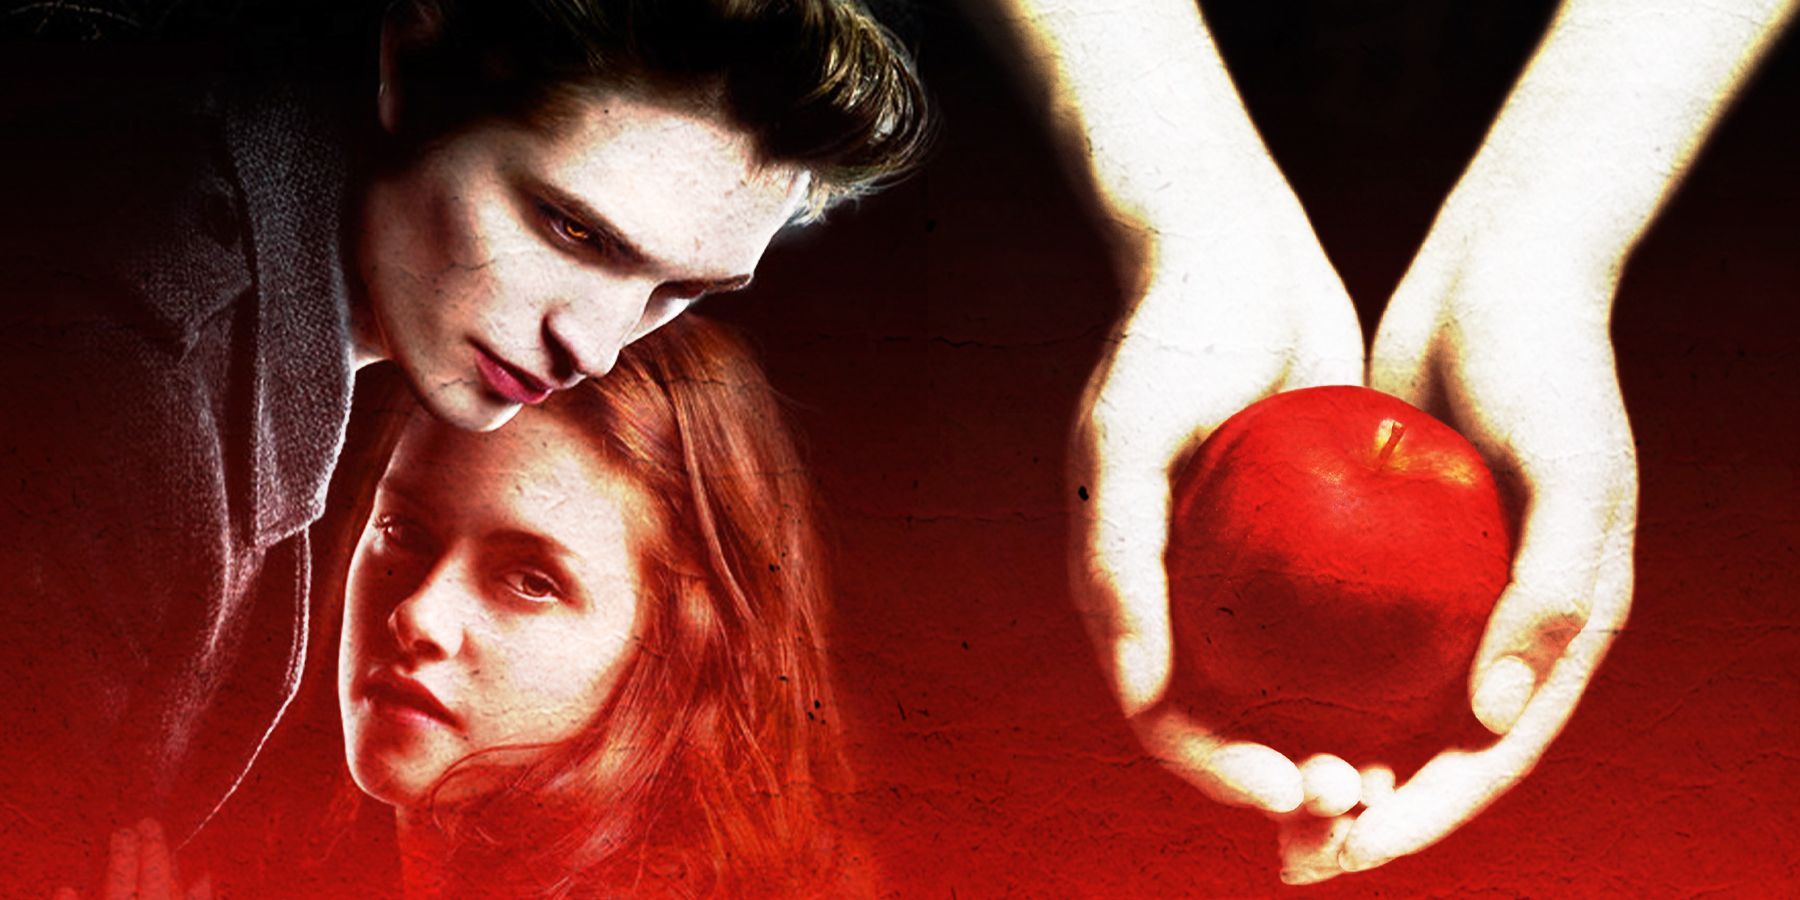 The Twilight Saga's Edward and Bella alongside Twilight's book cover